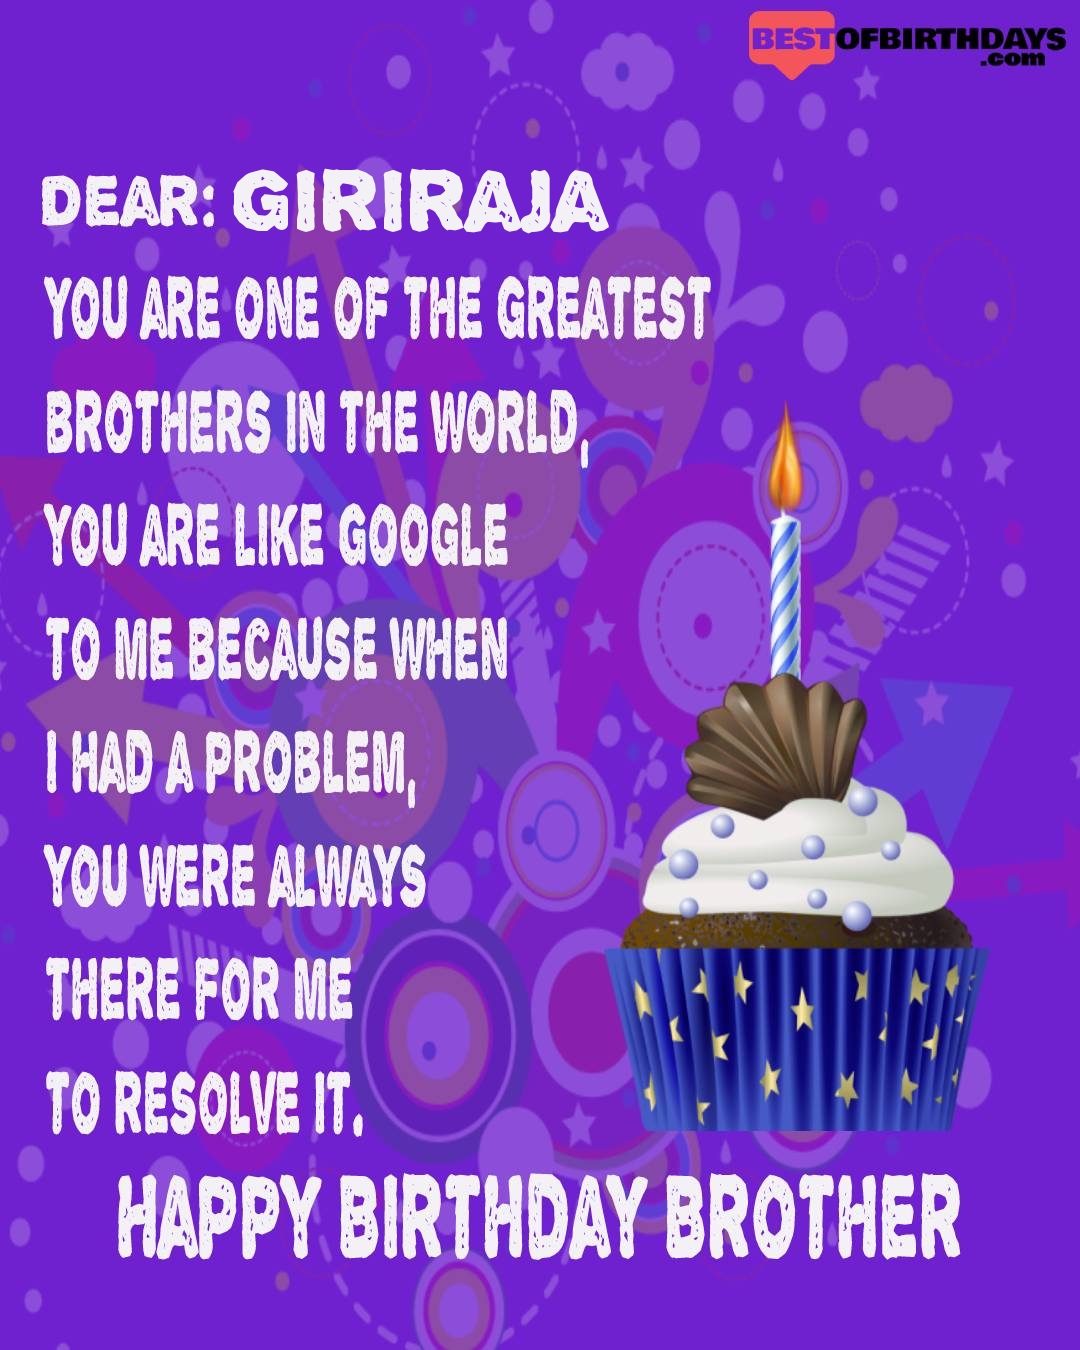 Happy birthday giriraja bhai brother bro